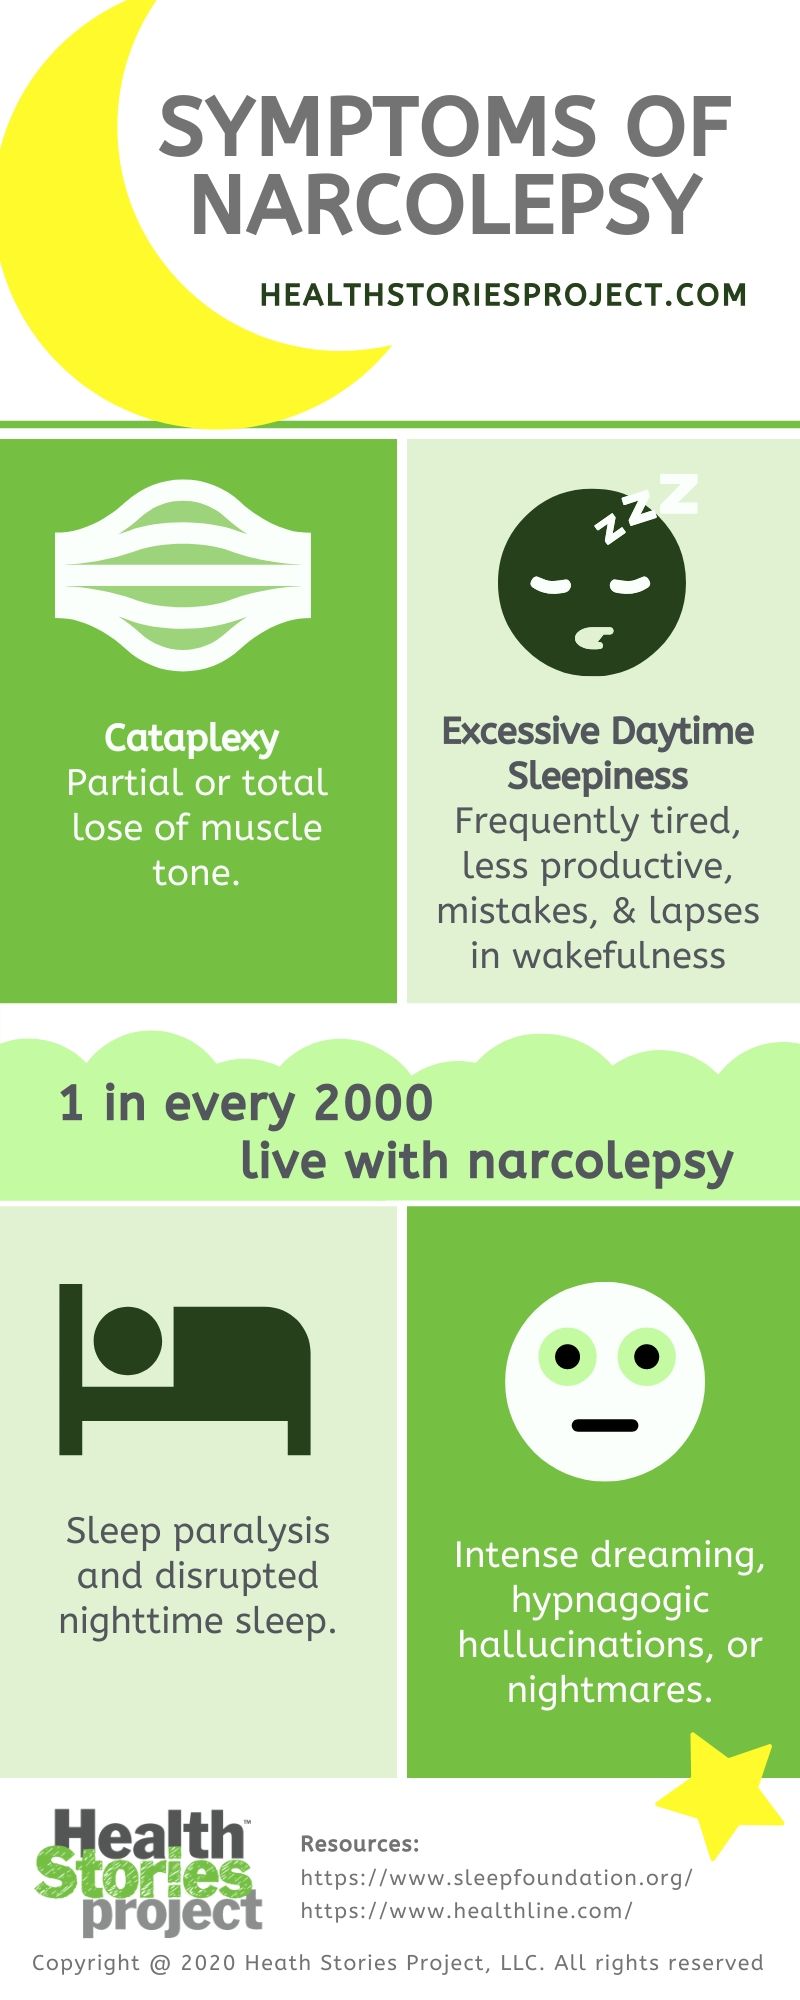 Symptoms of Narcolepsy